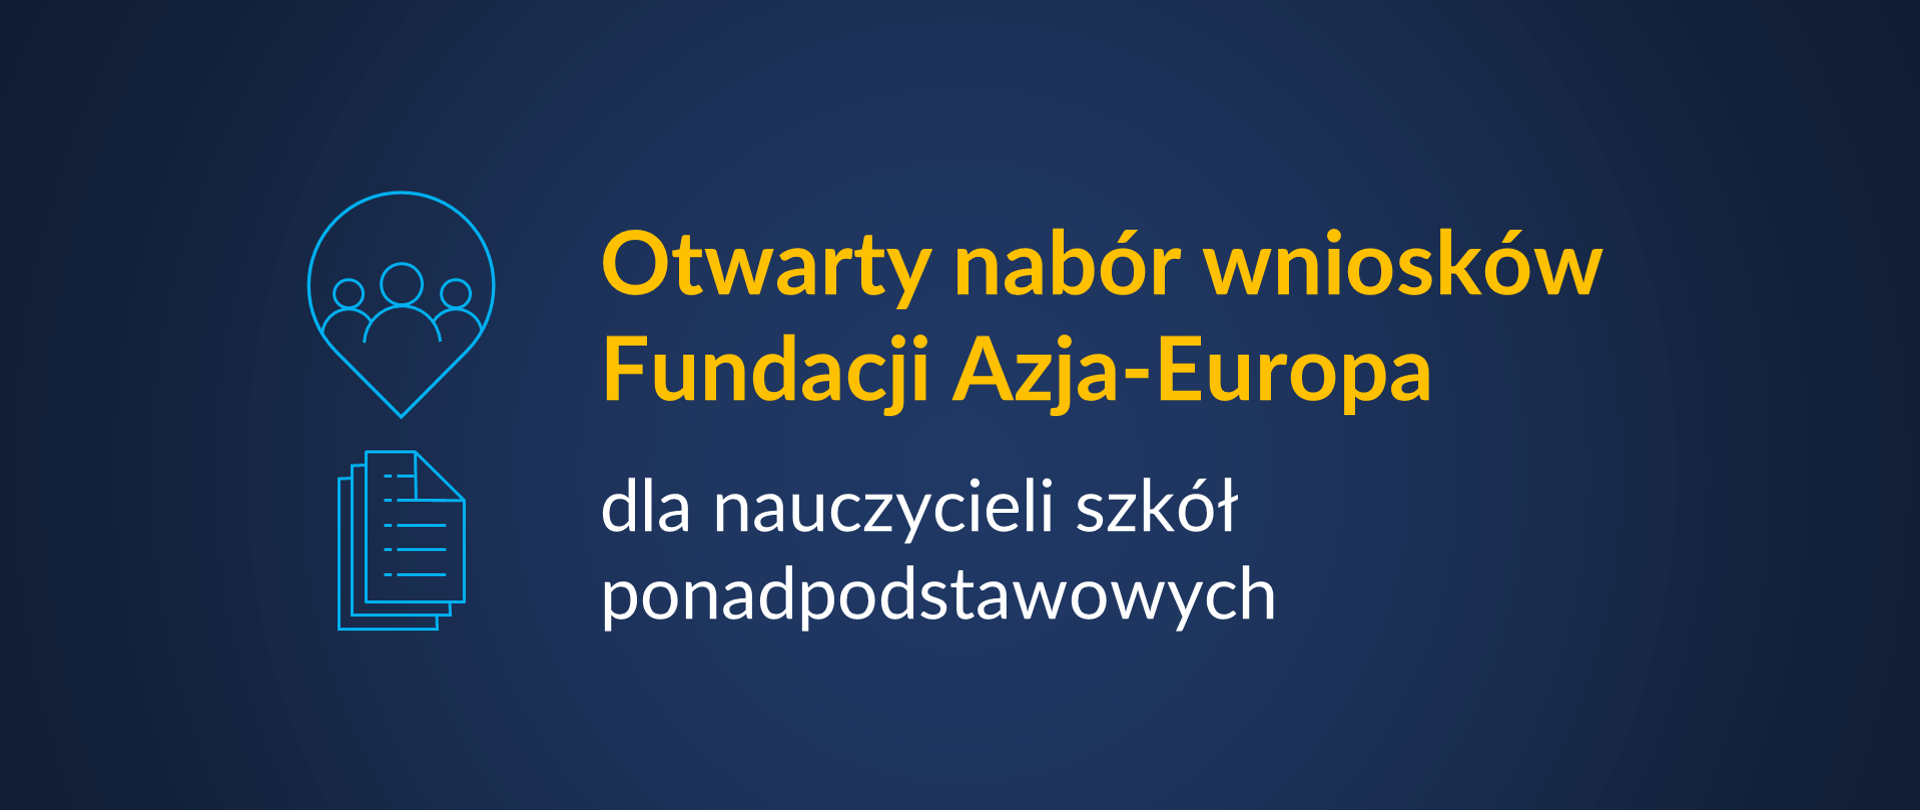 Grafika z tekstem: "Otwarty nabór wniosków Fundacji Azja – Europa dla nauczycieli szkół ponadpodstawowych"